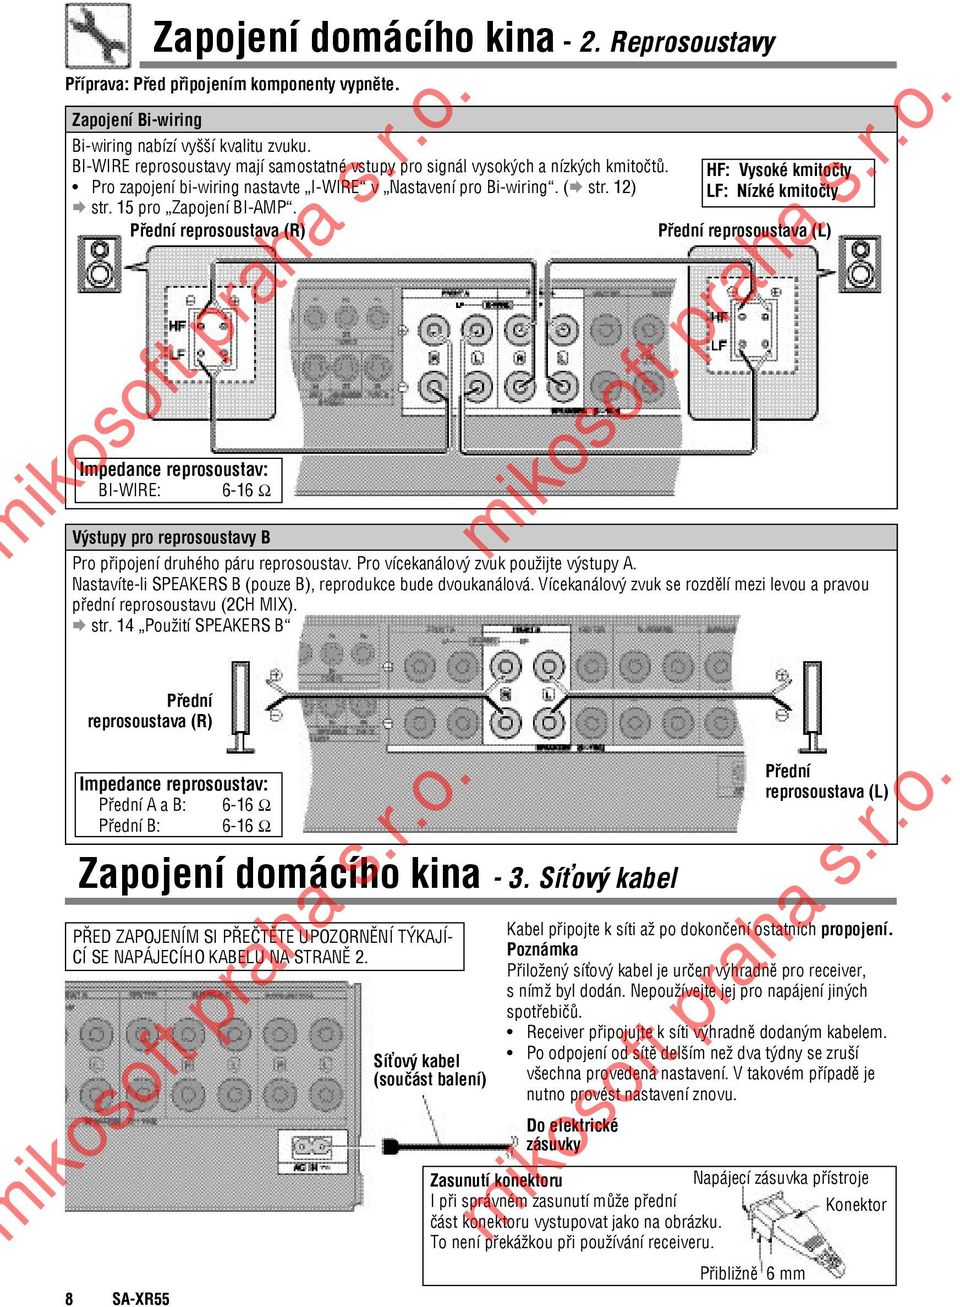 1) LF: Nízké kmitočty str. 15 pro Zapojení BI-AMP.